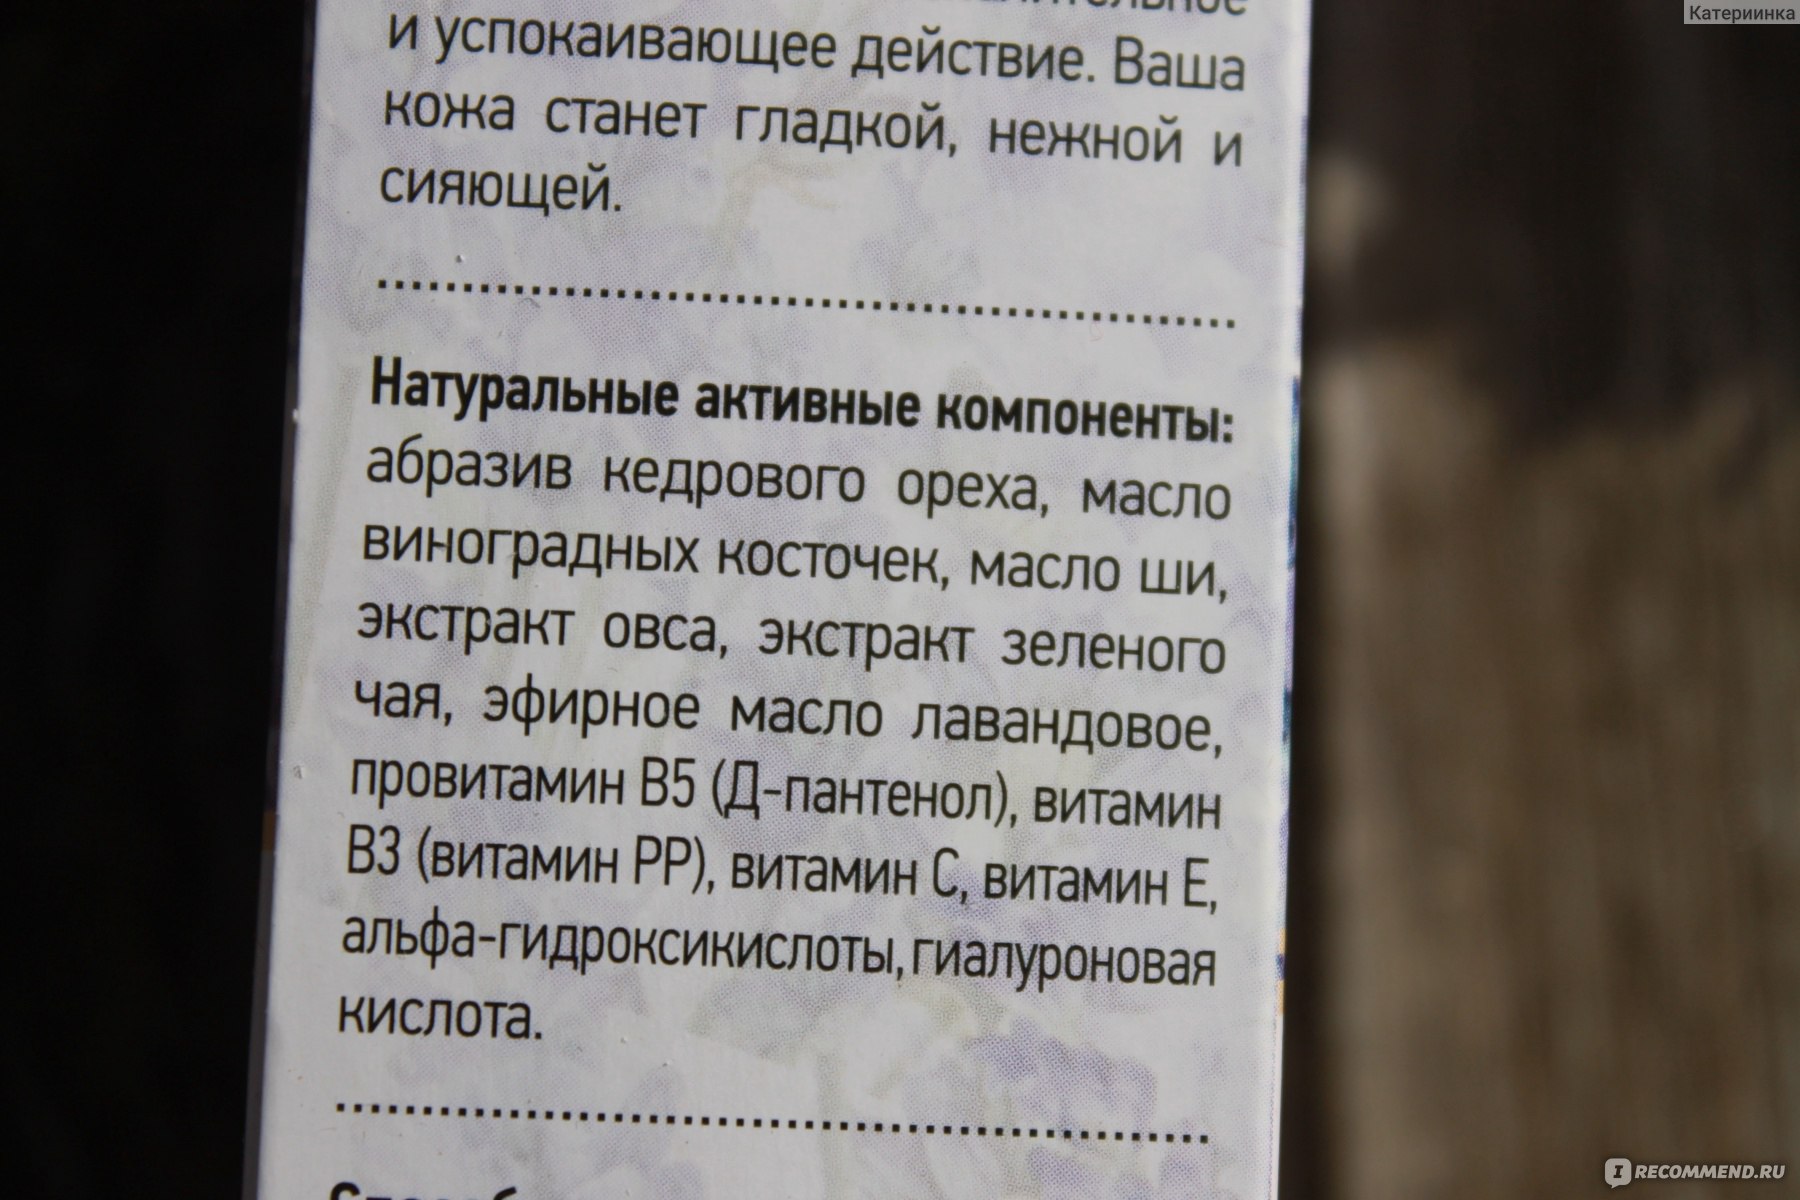 Крем-скраб для лица Крымская Роза «LAVENDER» с абразивом кедрового ореха Для всех типов кожи